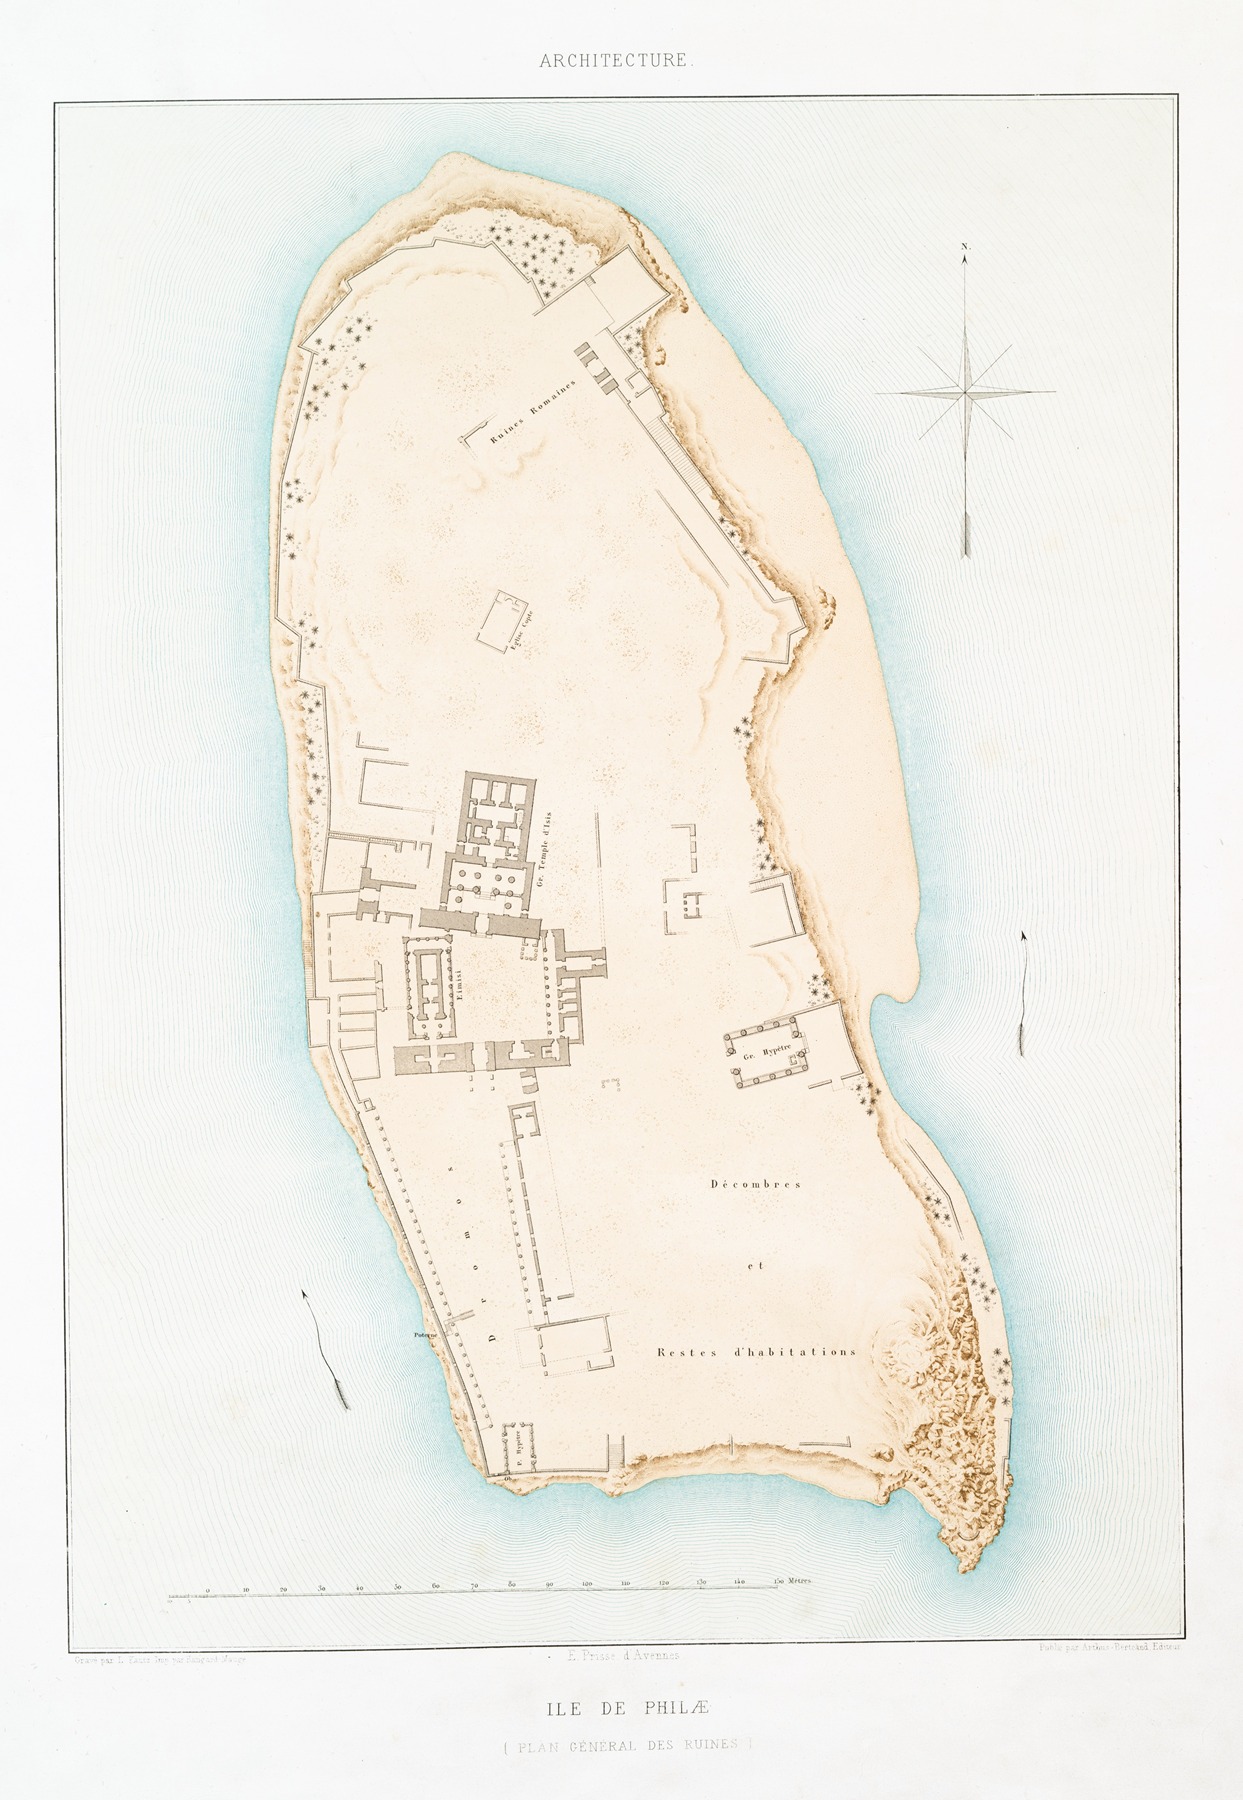 Émile Prisse d'Avennes - Architecture; Ile de Philæ (plan général des ruines)